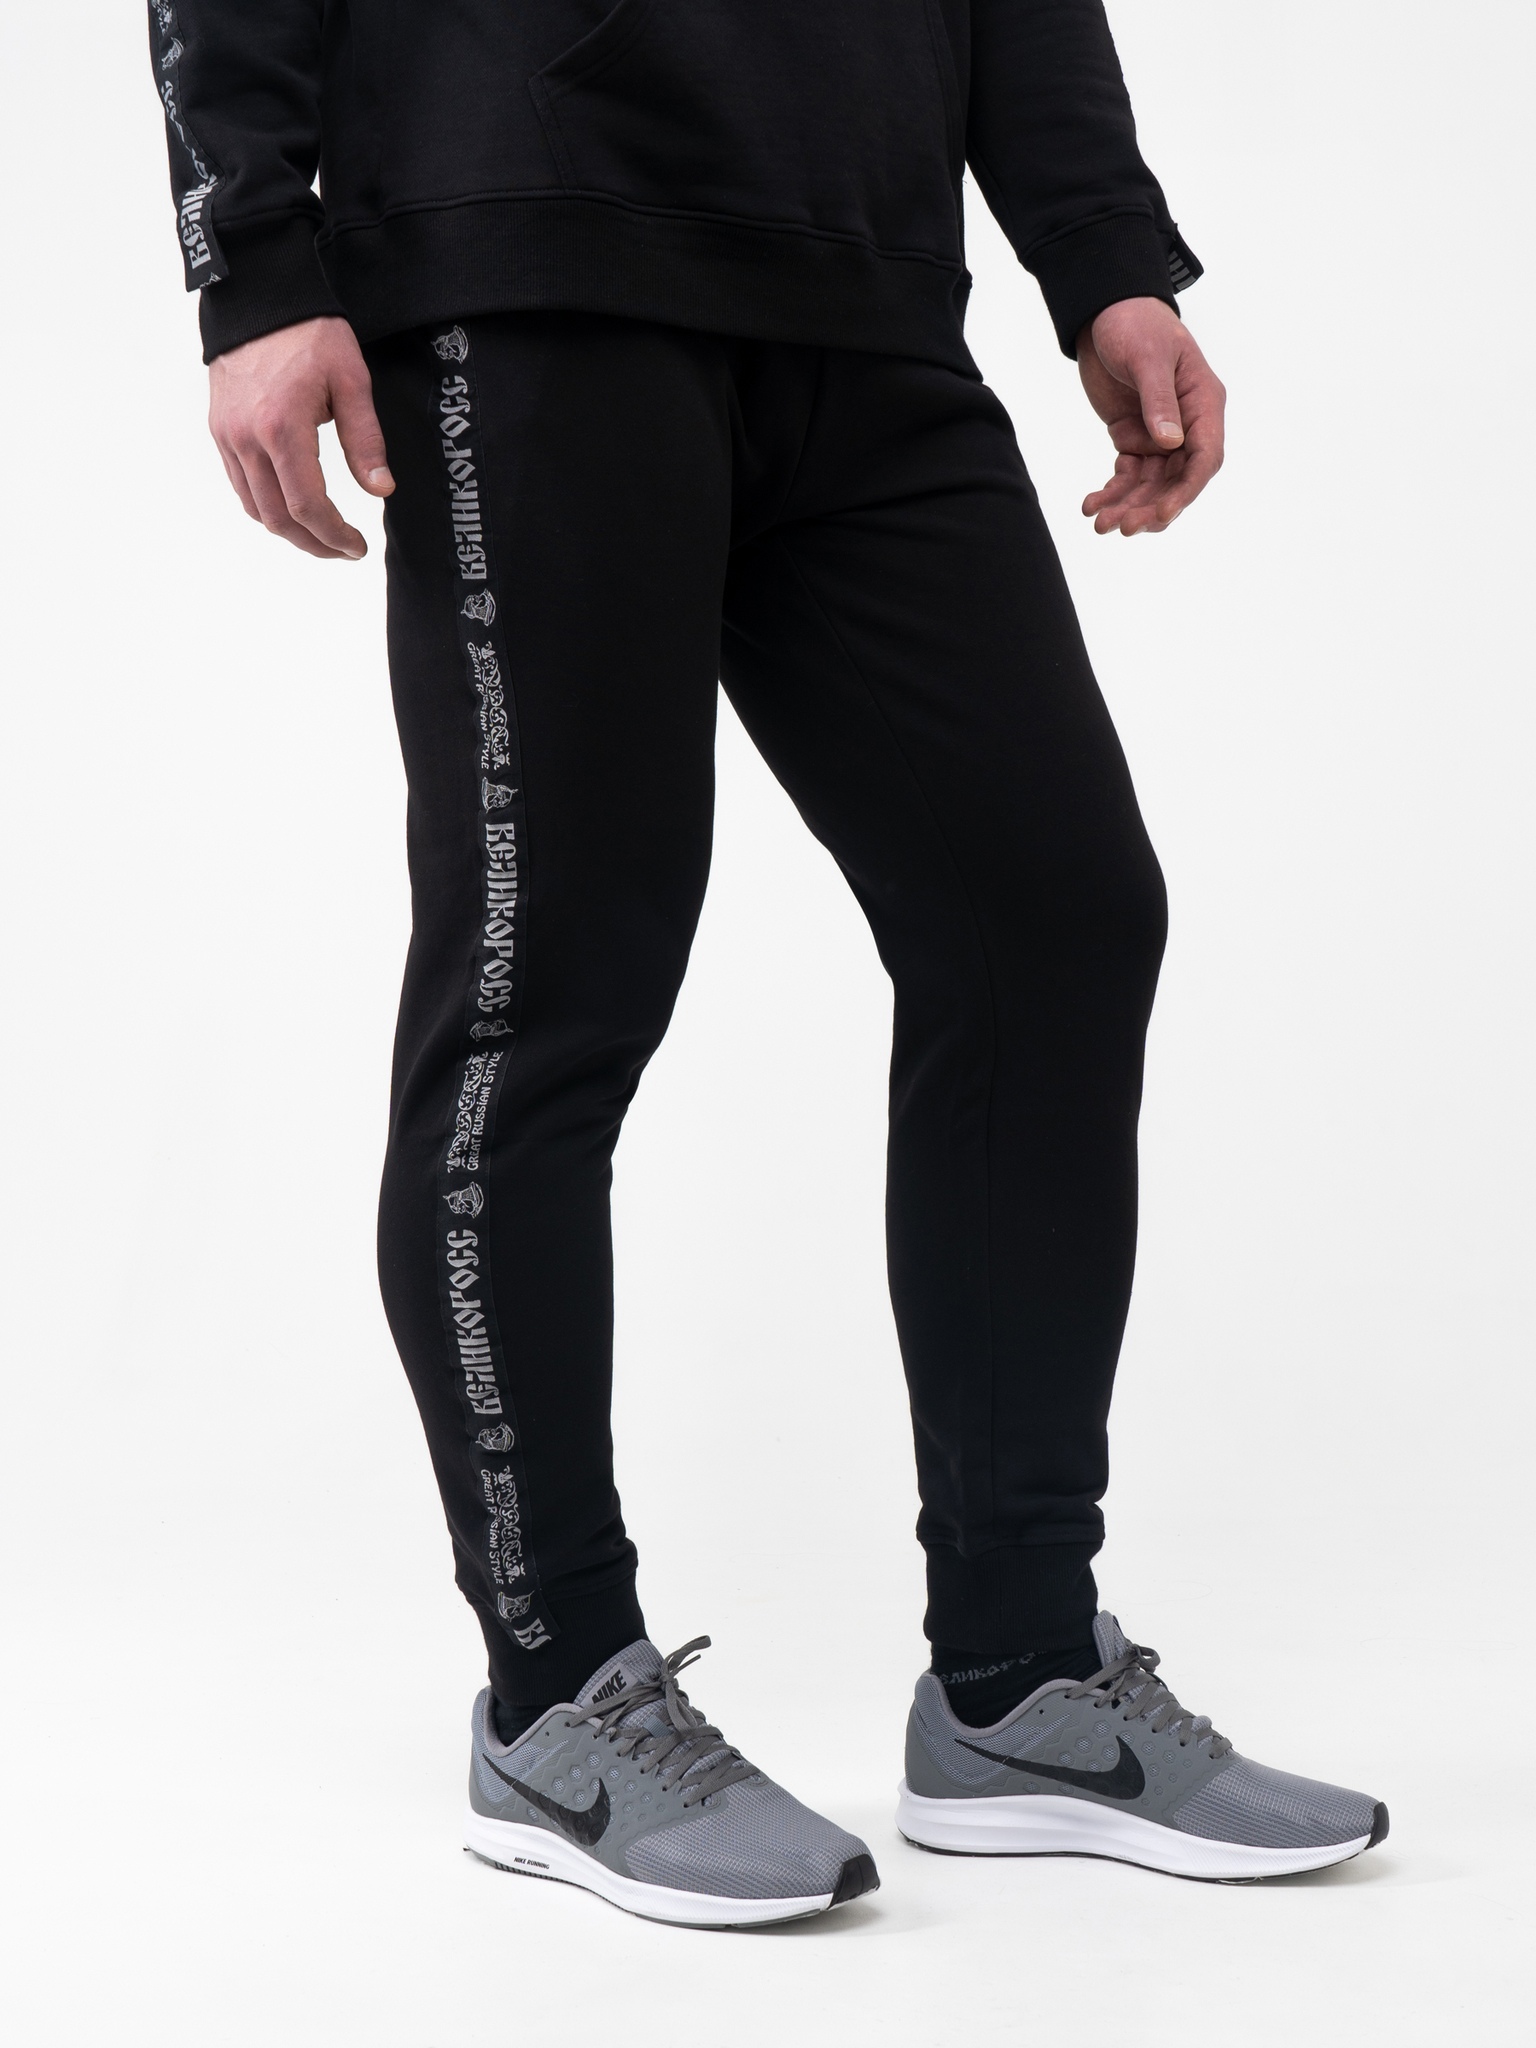 Спортивные брюки мужские Великоросс BM черные 44 RU